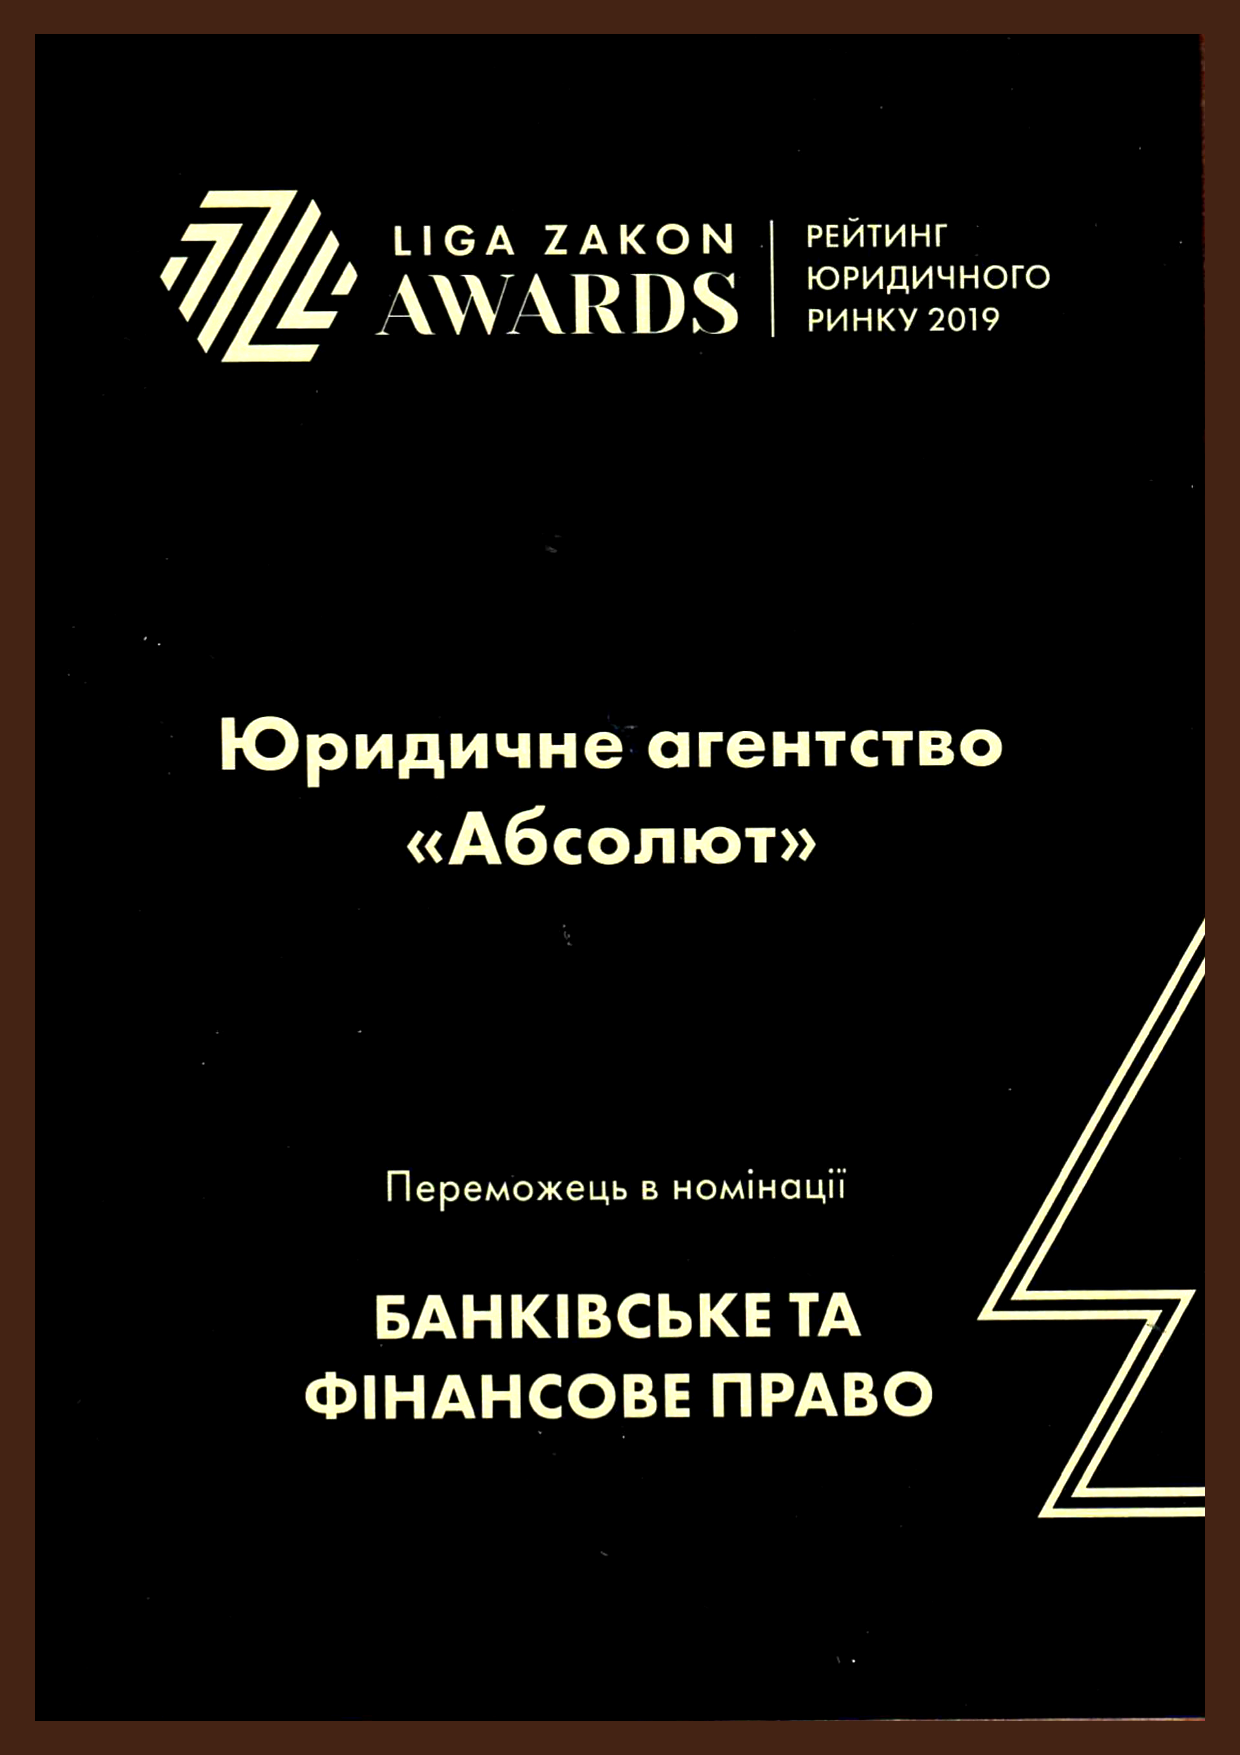 ЮА «Абсолют» – победитель в номинации «Банковское и финансовое право»